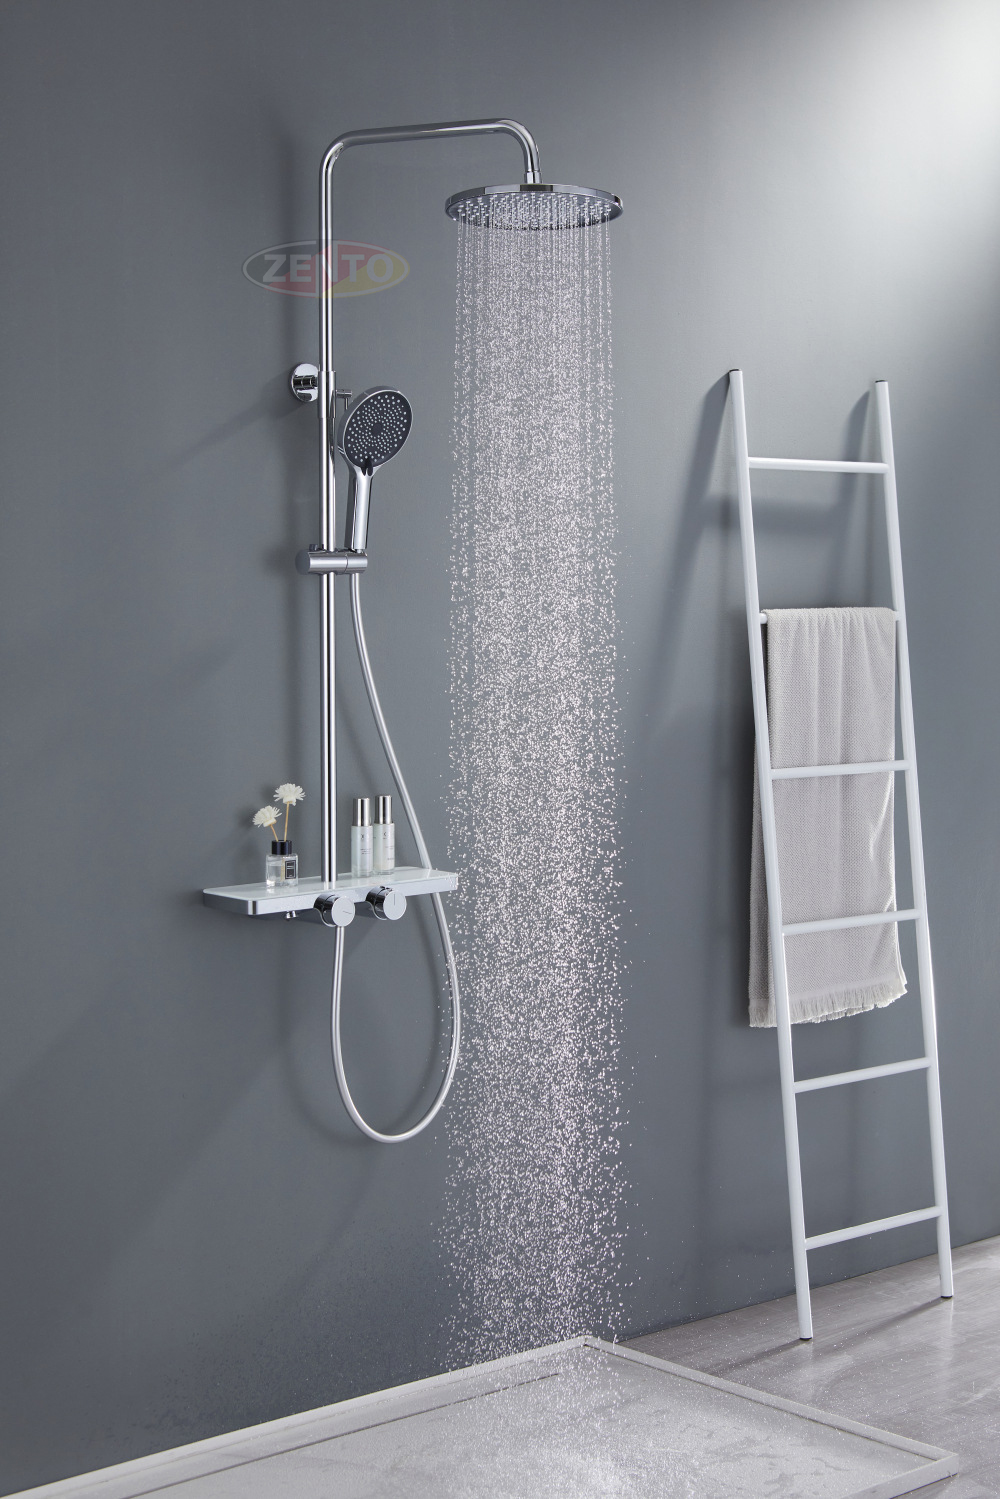 Bộ sen cây nóng lạnh Zento Luxury Shower ZT8702